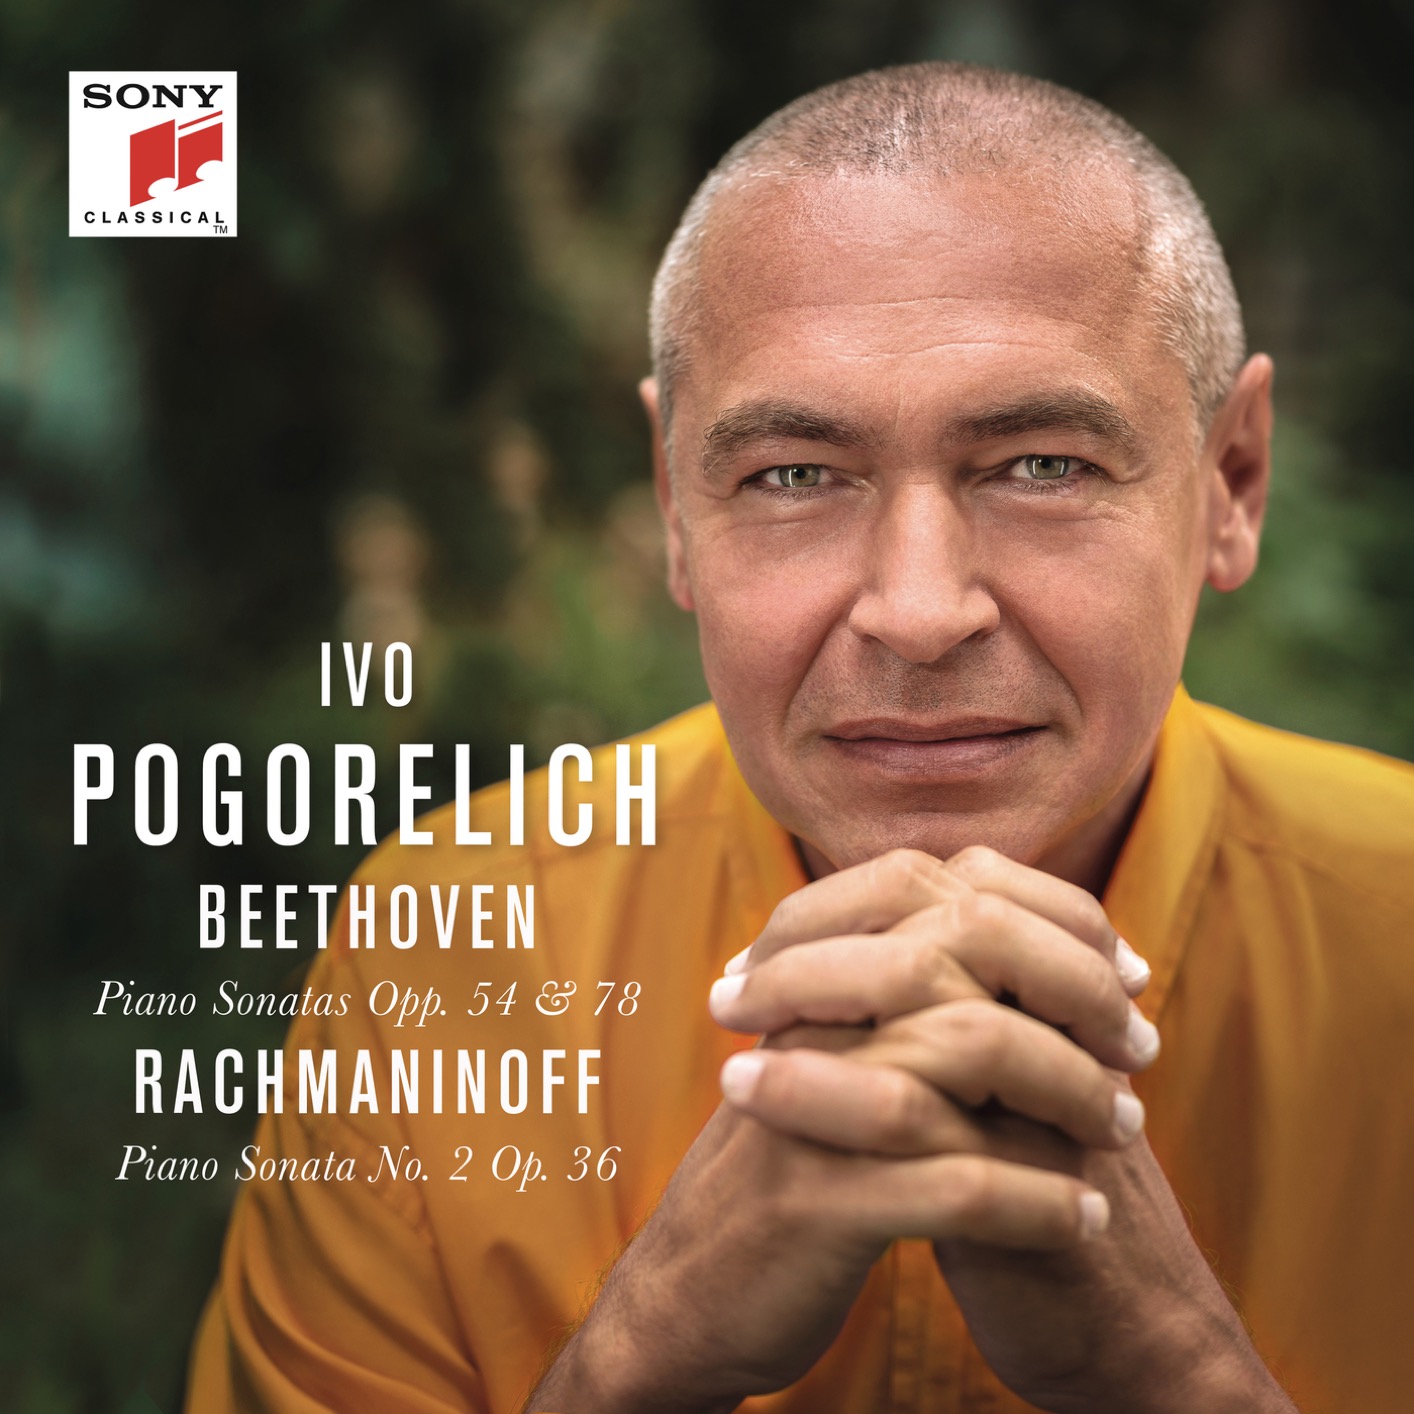 Ivo Pogorelich -Beethoven: Piano Sonatas Opp. 54 & 78 - Rachmaninoff: Piano Sonata No. 2 Op. 36 (2019) [FLAC 24bit/96kHz]